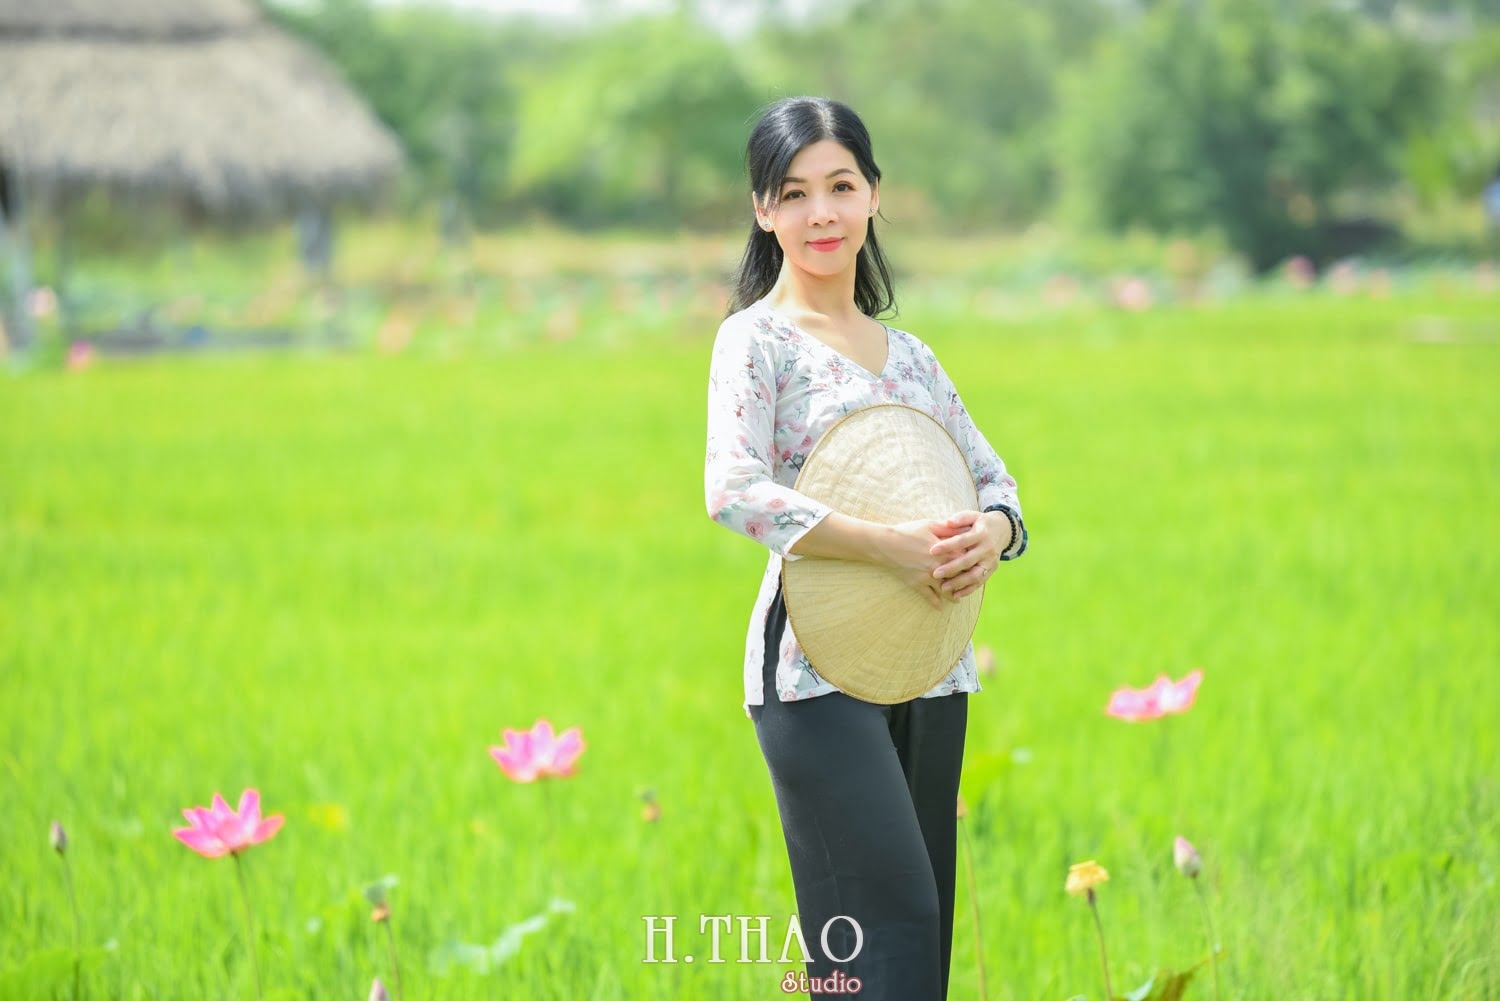 Anh Hoa sen 42 min - Concept chụp ảnh ngoại cảnh đẹp mà chất– HThao Studio